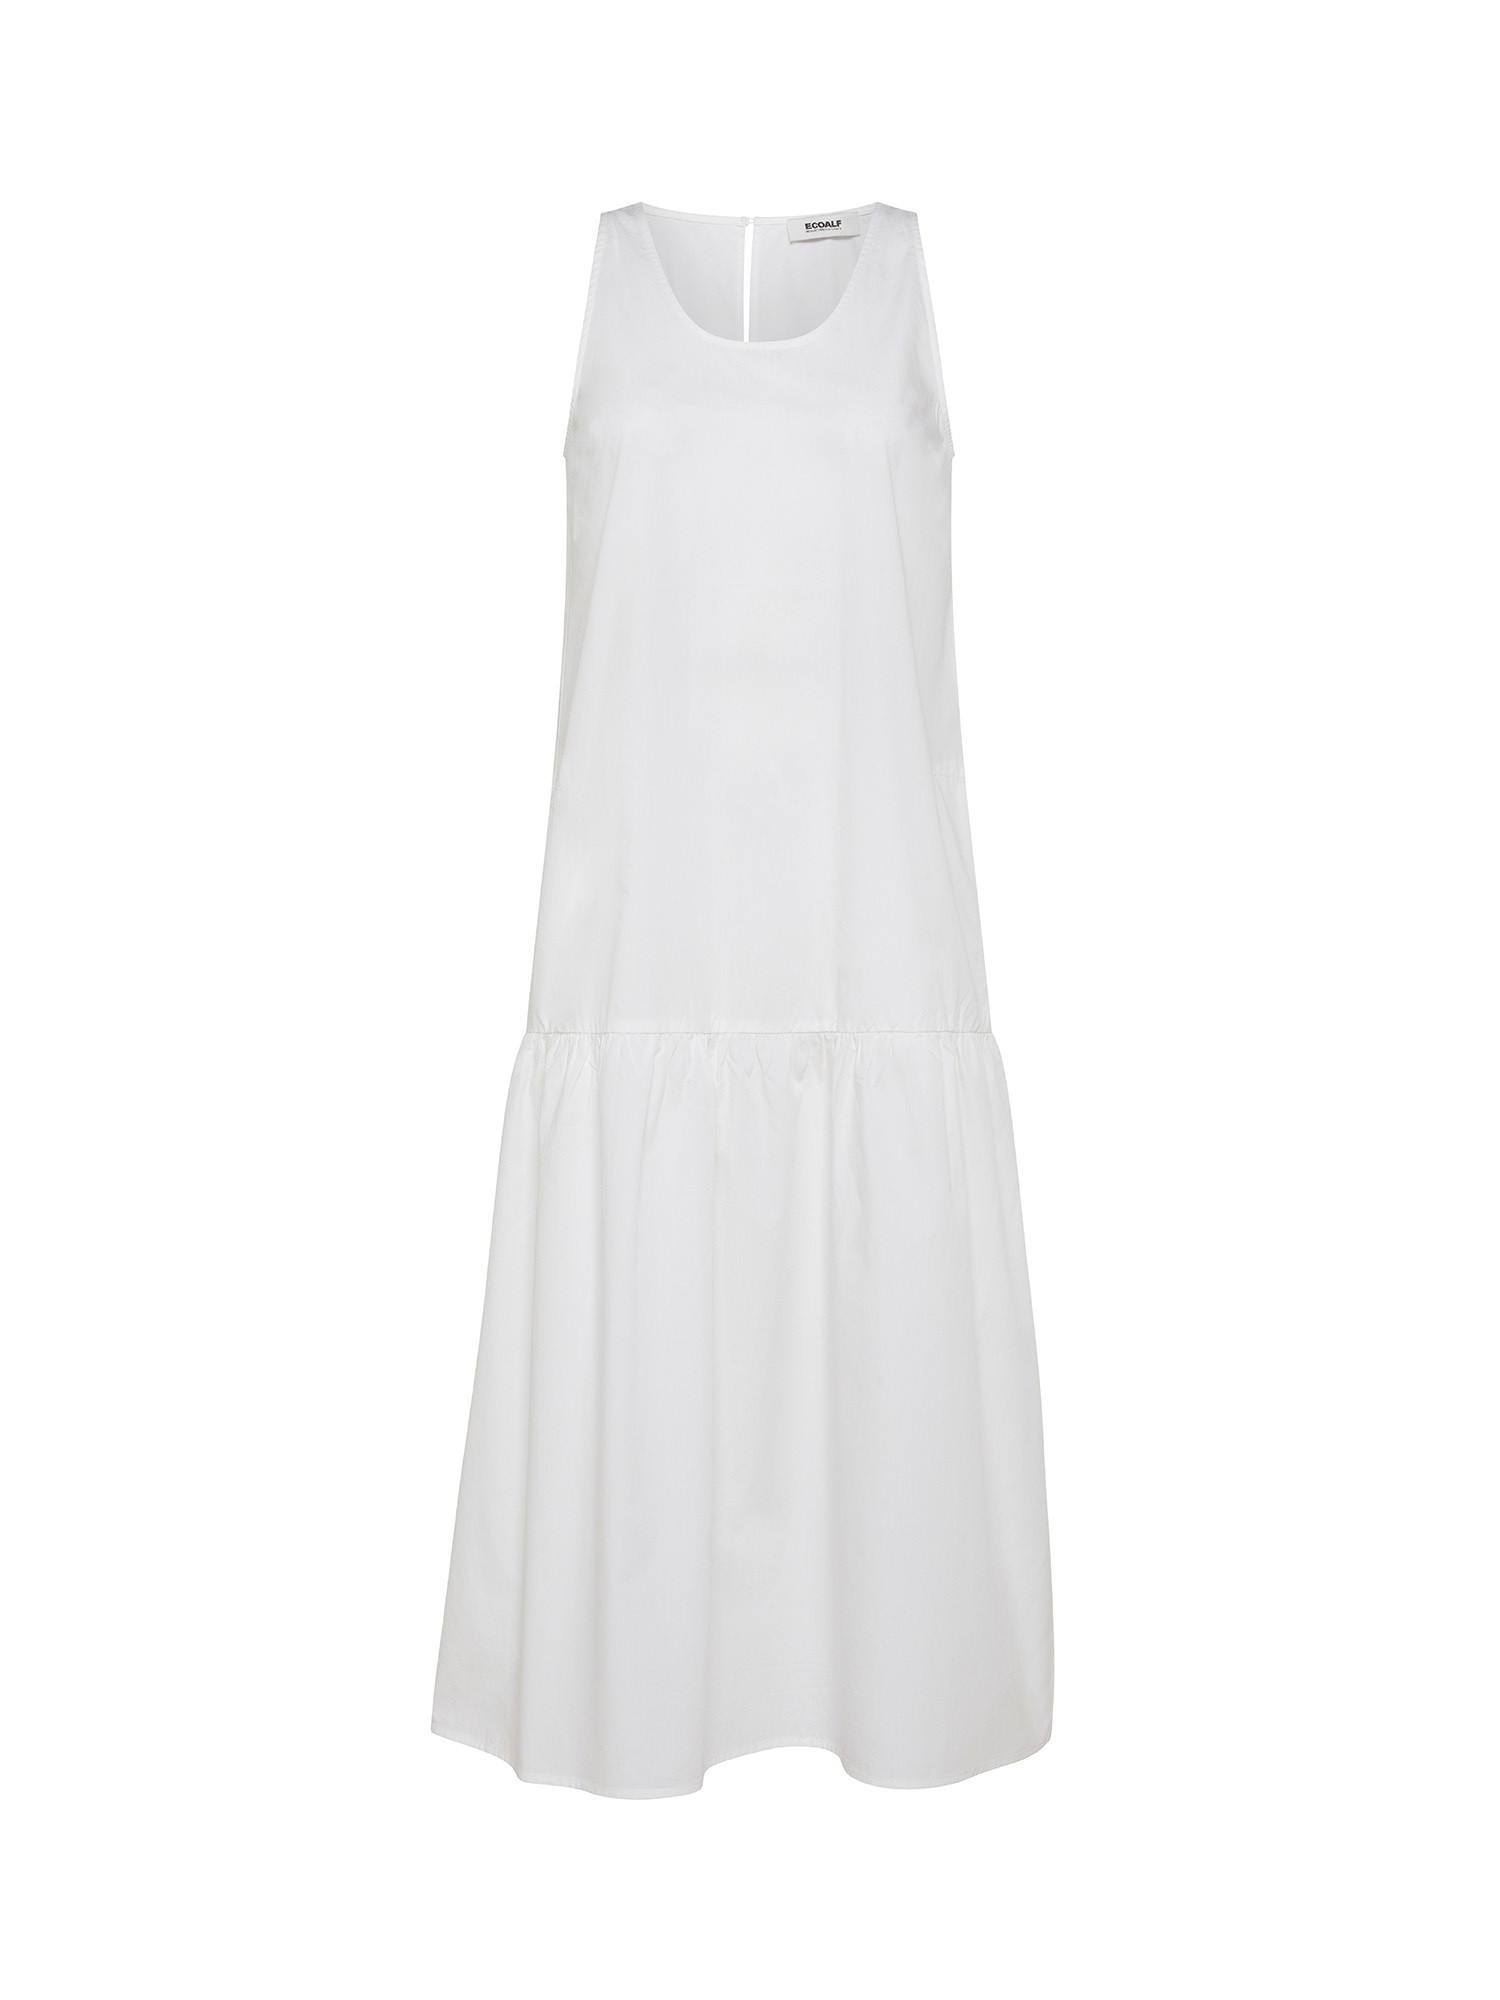 Ecoalf - Malaquita oversized dress, White, large image number 0